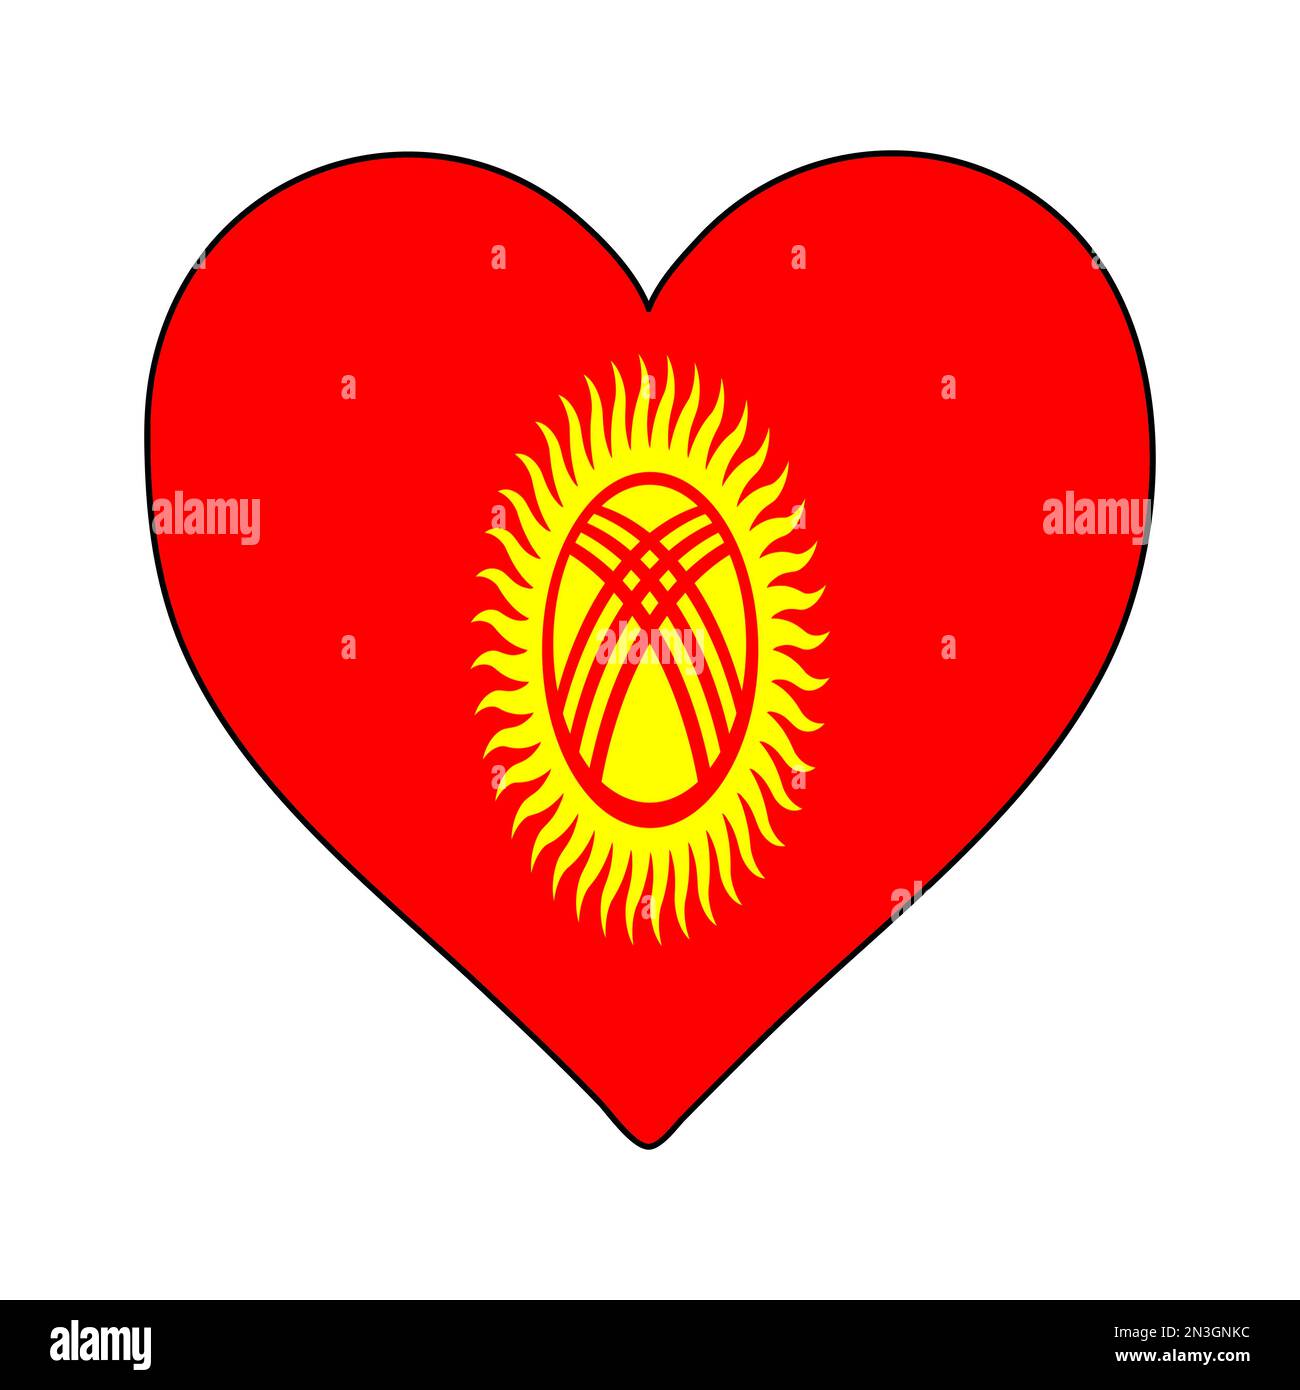 Kyrgyzstan Heart Shape Flag. Love Kyrgyzstan. Visit Kyrgyzstan. Central Asia. Asia. Vector Illustration Graphic Design. Stock Vector